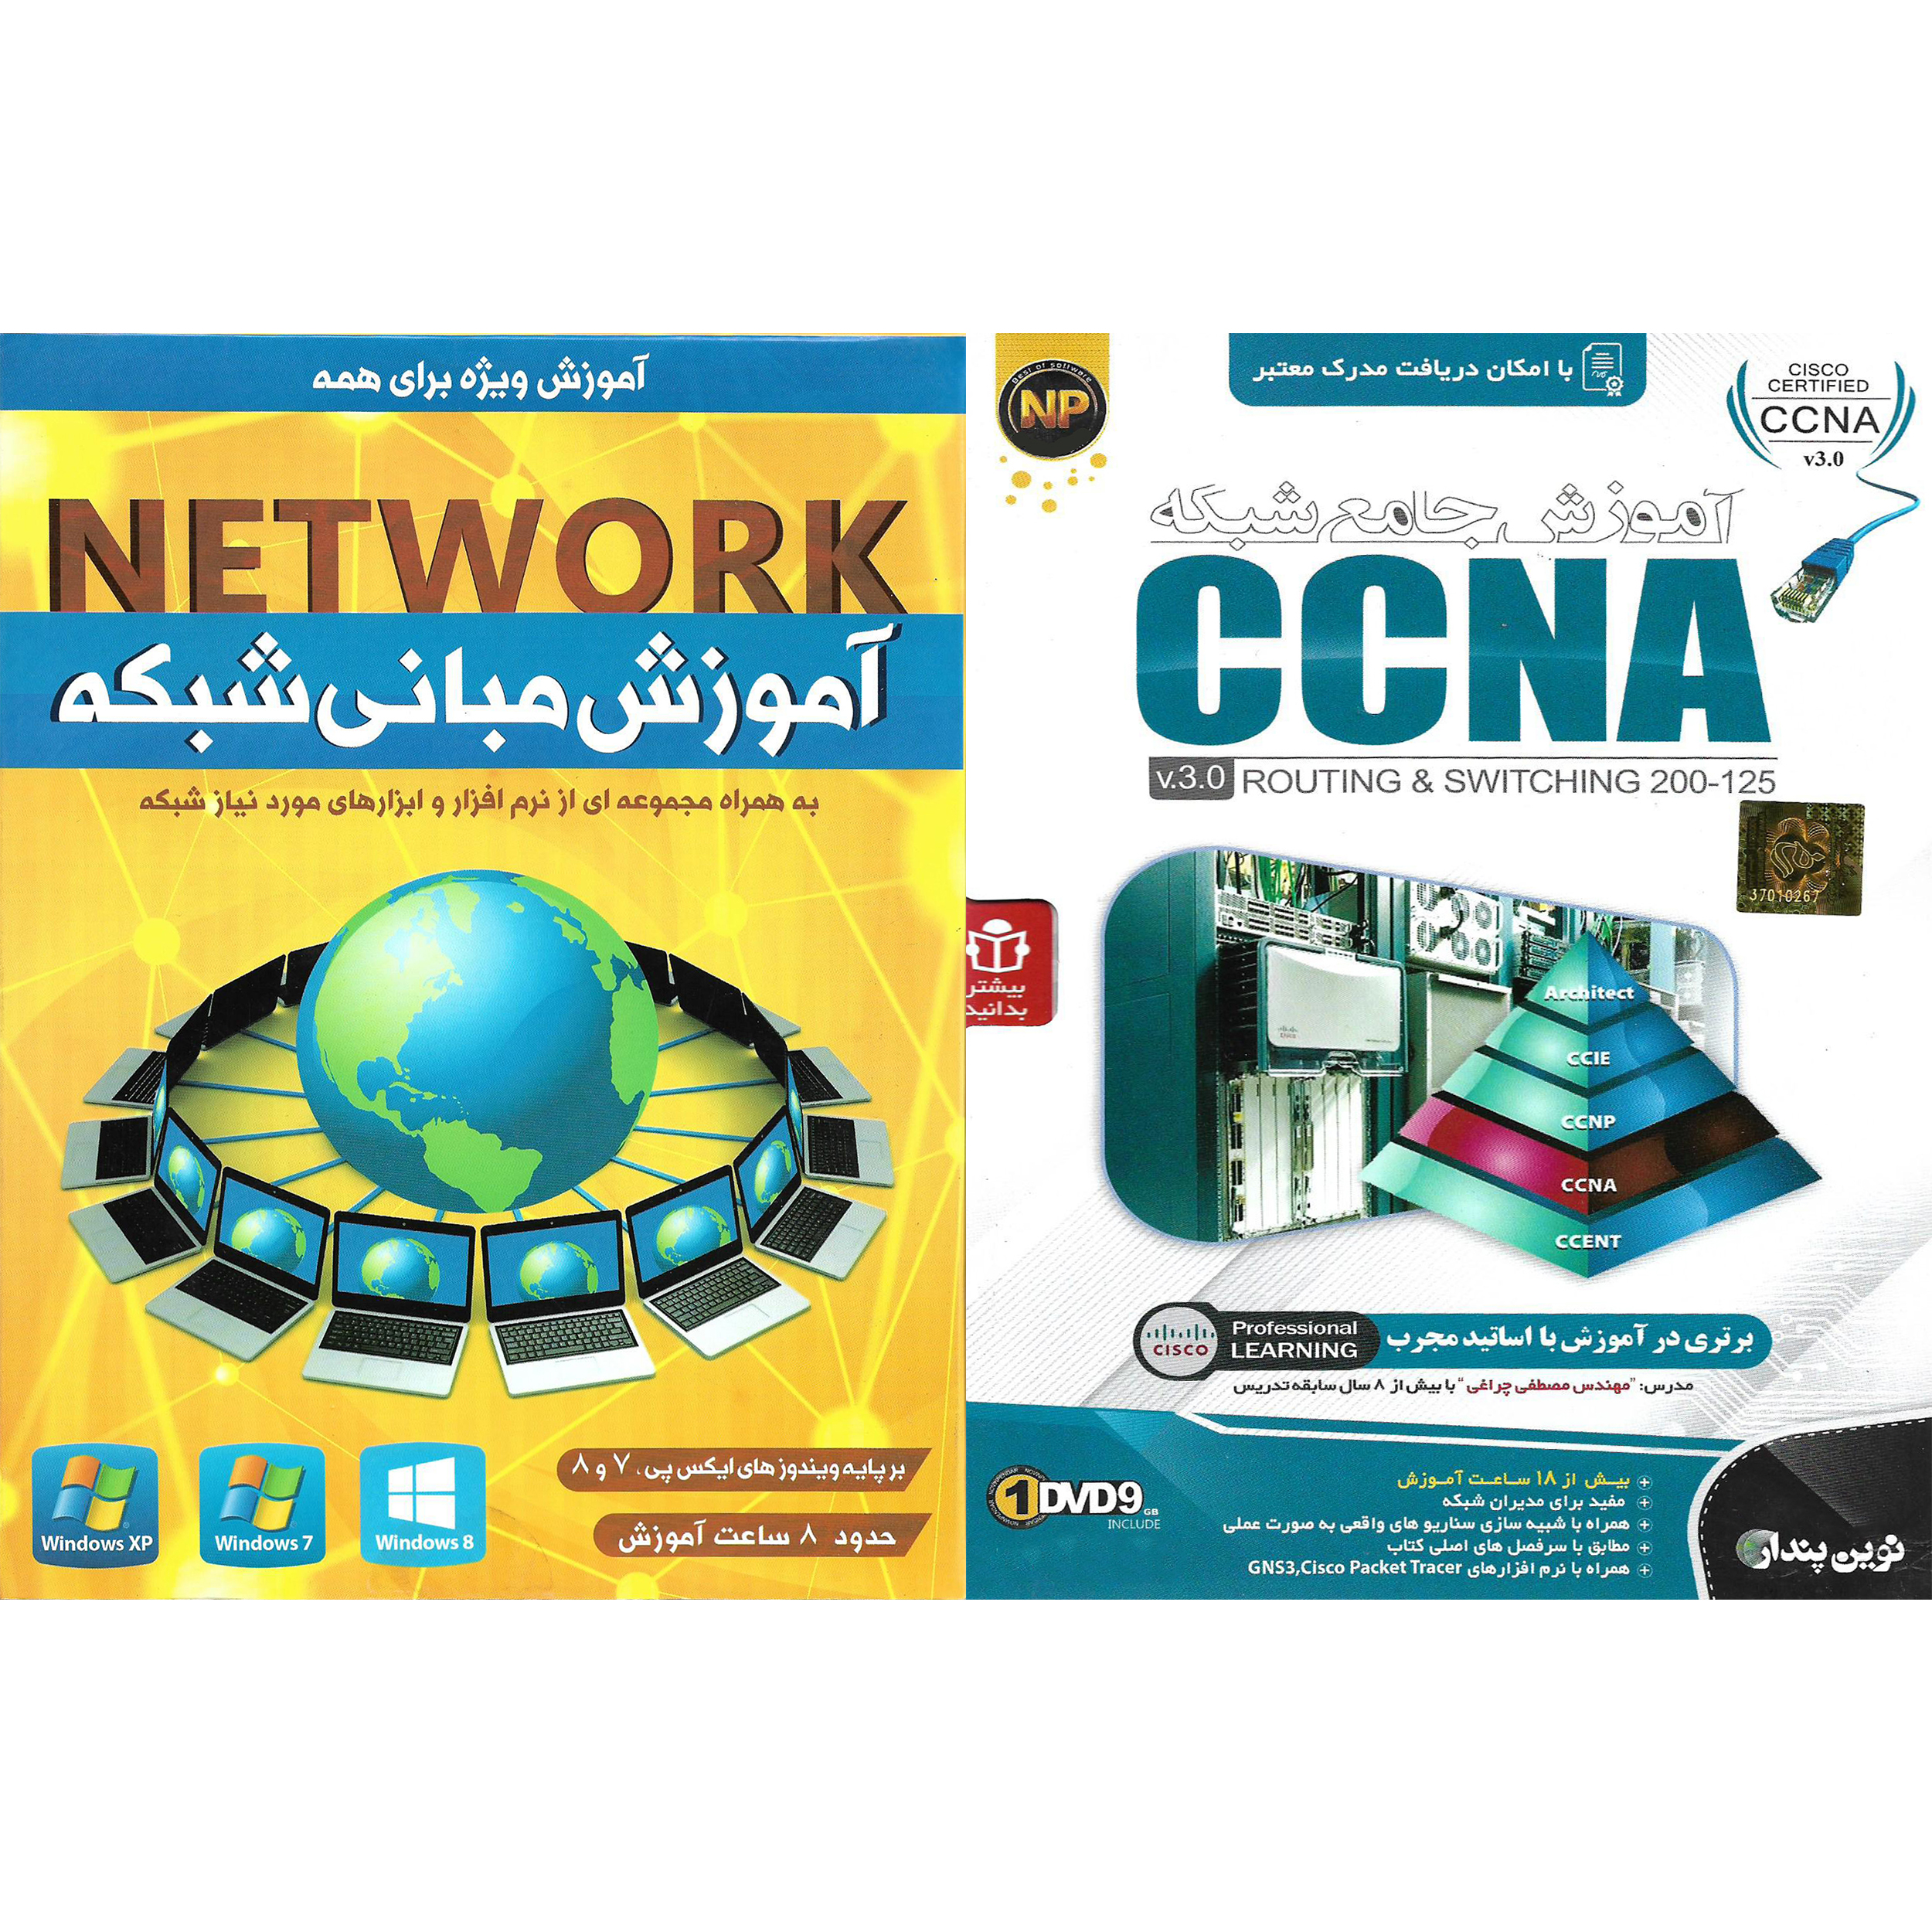 نرم افزار آموزش شبکه CCNA نشر نوین پندار به همراه نرم افزار آموزش مبانی شبکه NETWORK نشر پدیده